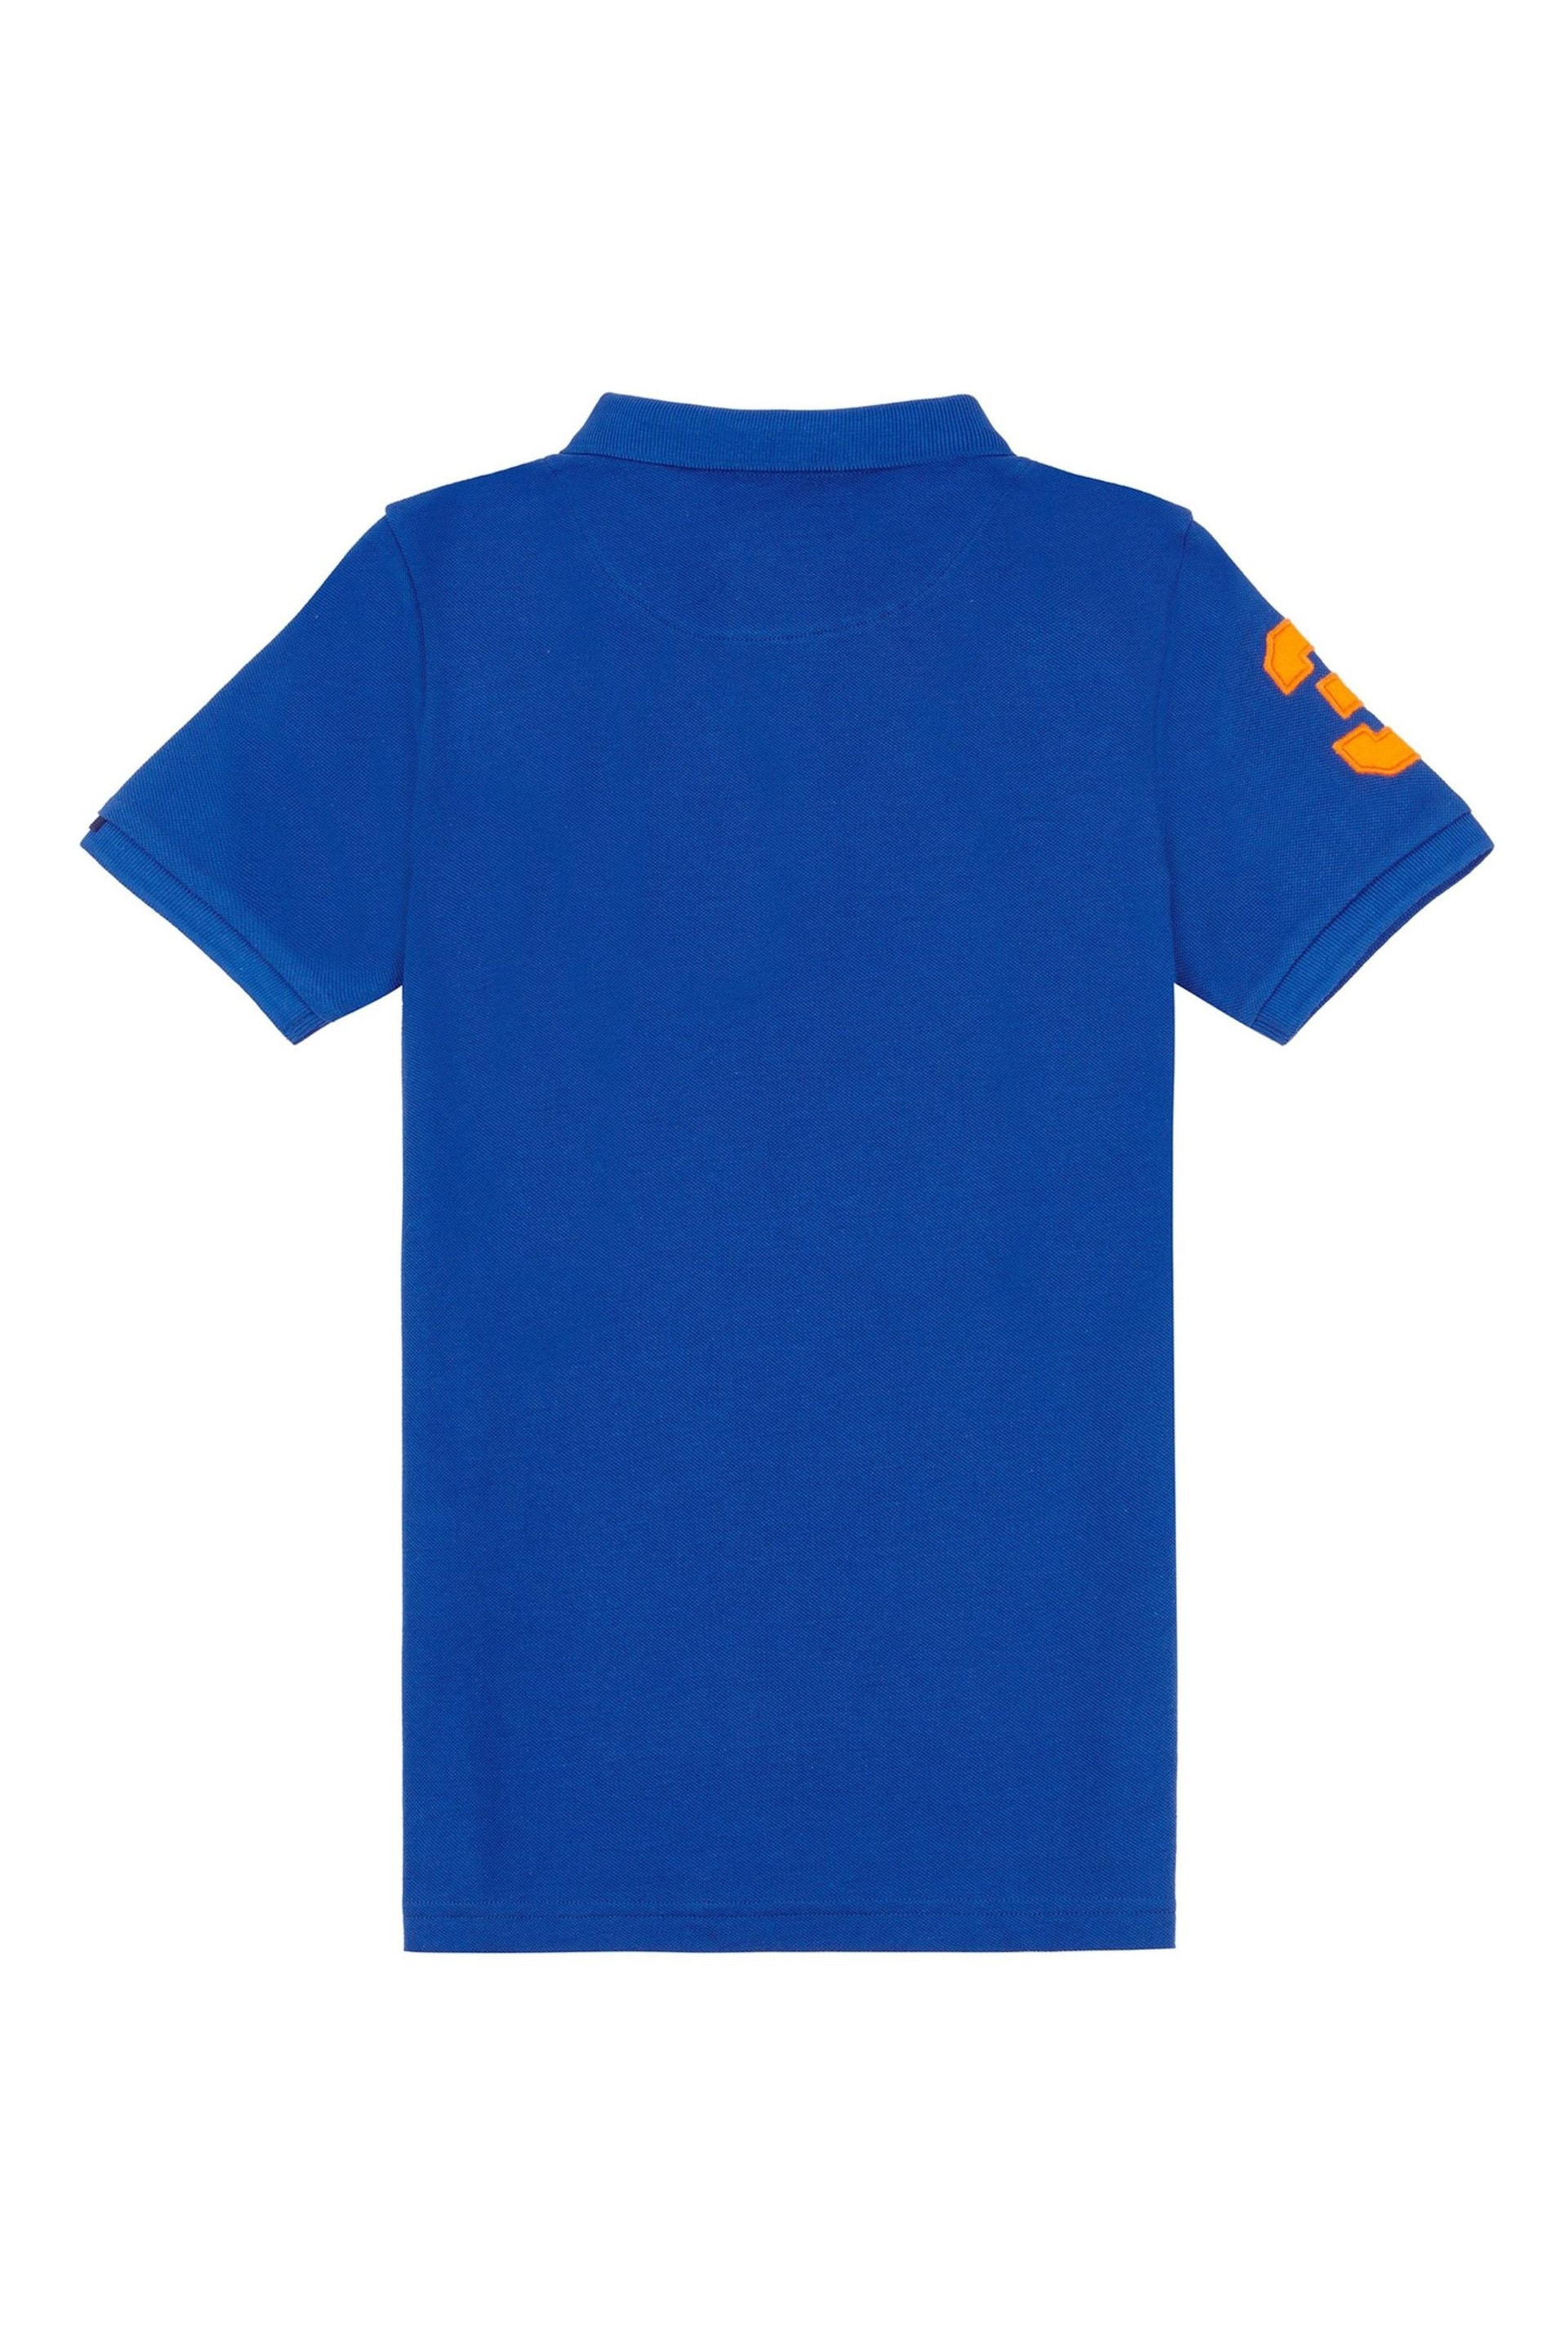 U.S. Polo Assn. Boys Player 3 Pique Polo Shirt - Image 6 of 7